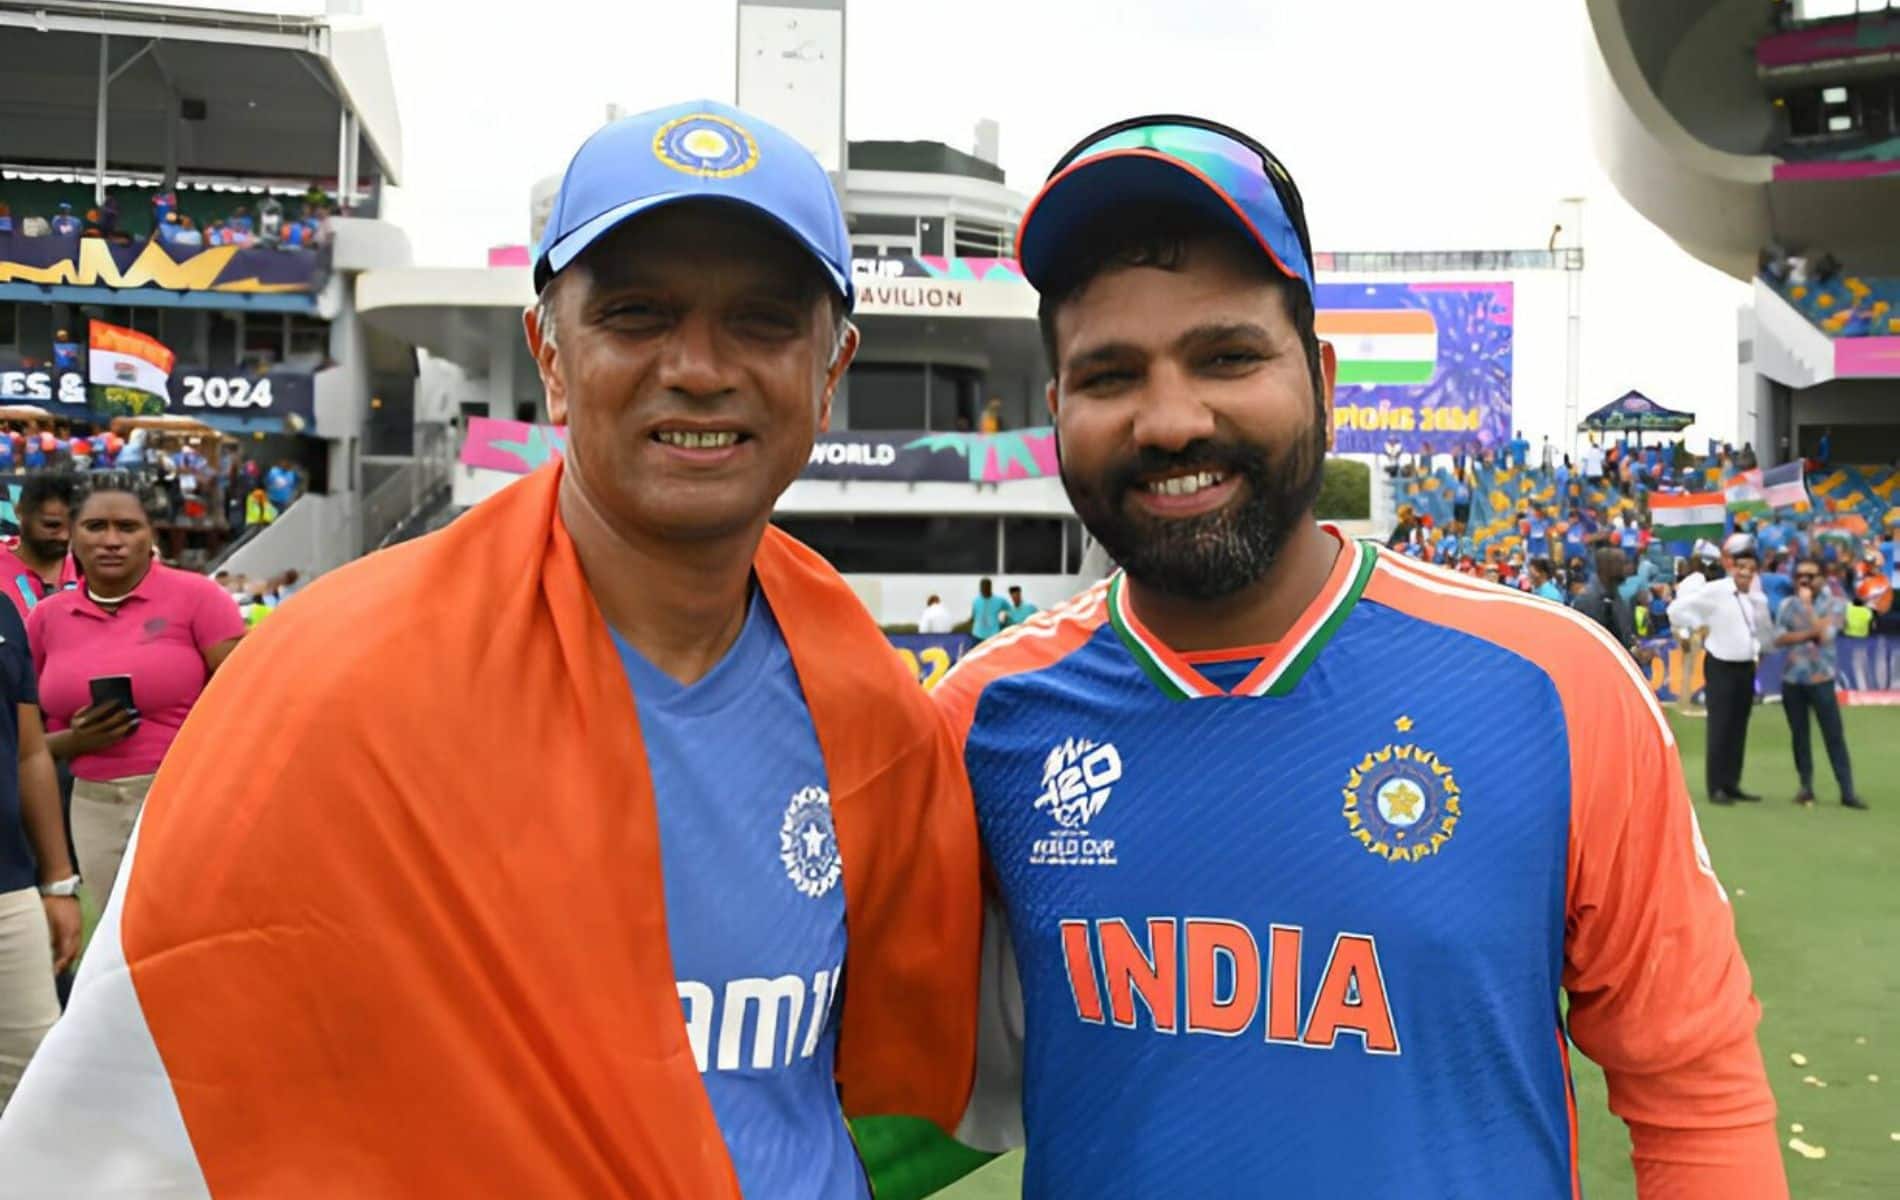 ICC T20 विश्व कप जीतने के बाद राहुल द्रविड़ ने भारतीय कोच का पद छोड़ा (X)